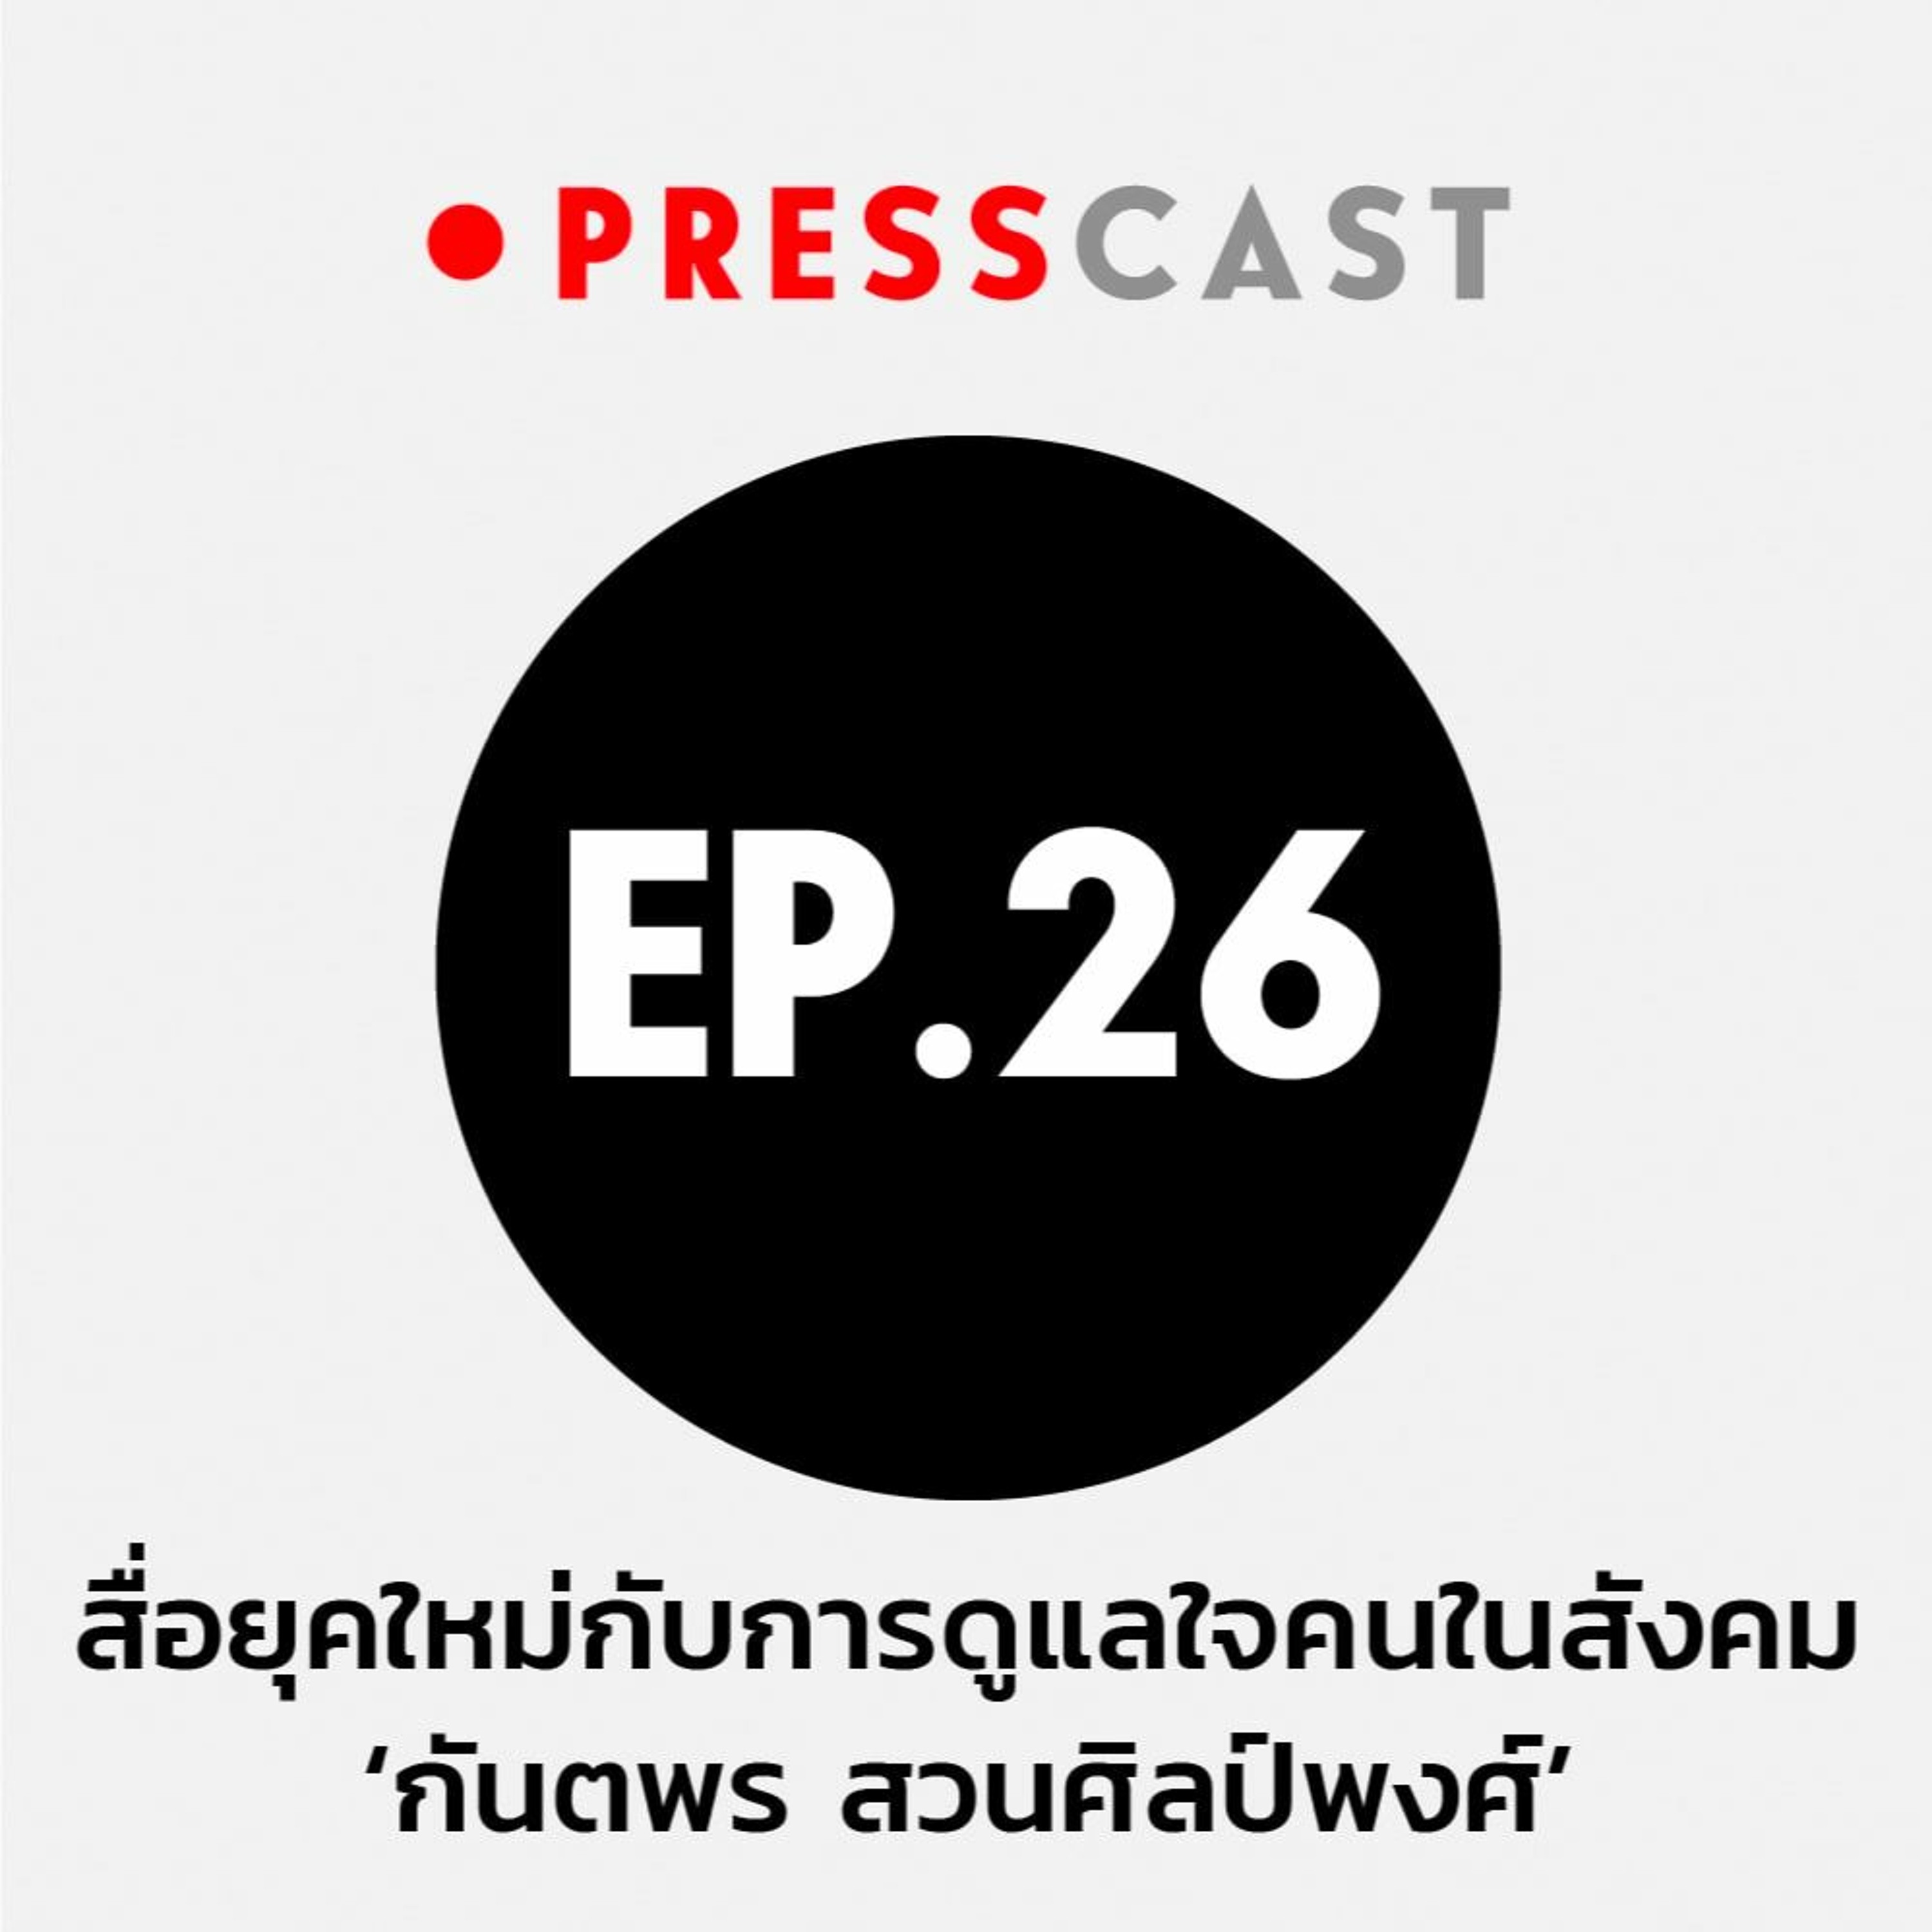 Presscast EP.26 : สื่อยุคใหม่กับการดูแลใจคนในสังคม ‘กันตพร สวนศิลป์พงศ์’